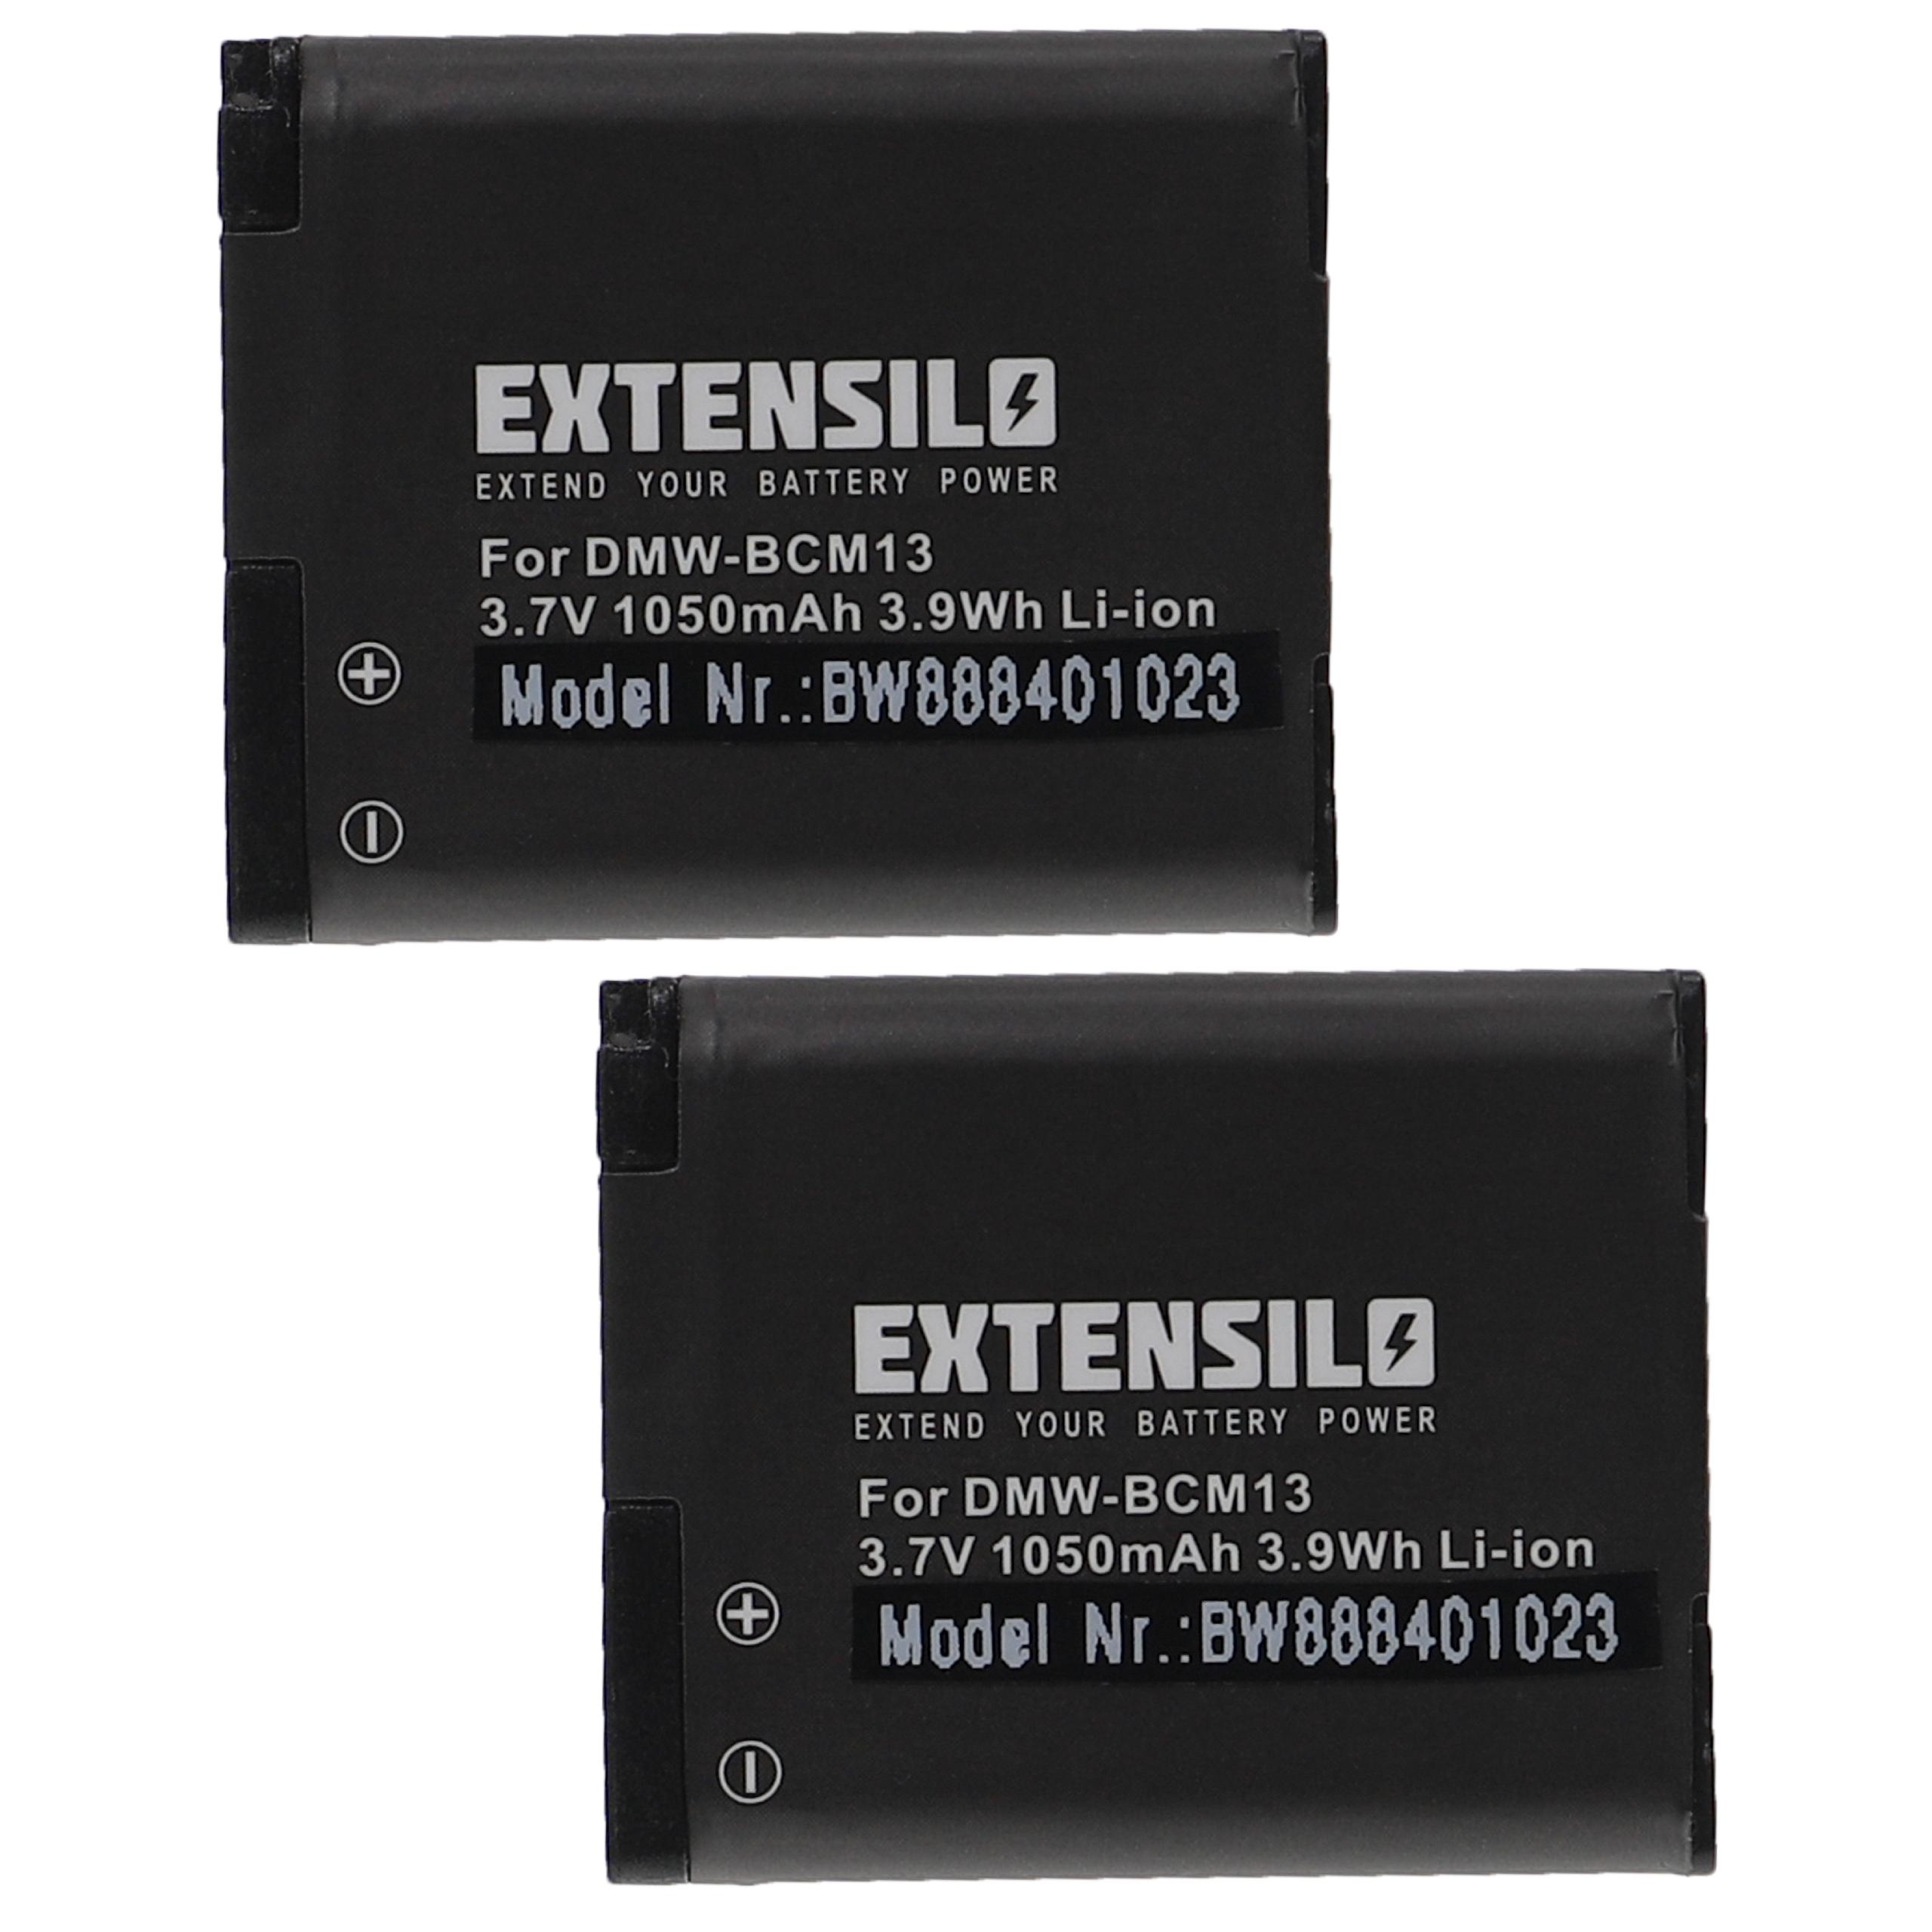 Batteries (2x pièces) remplace Panasonic DMW-BCM13E, DMW-BCM13 pour appareil photo - 1050mAh 3,7V Li-ion